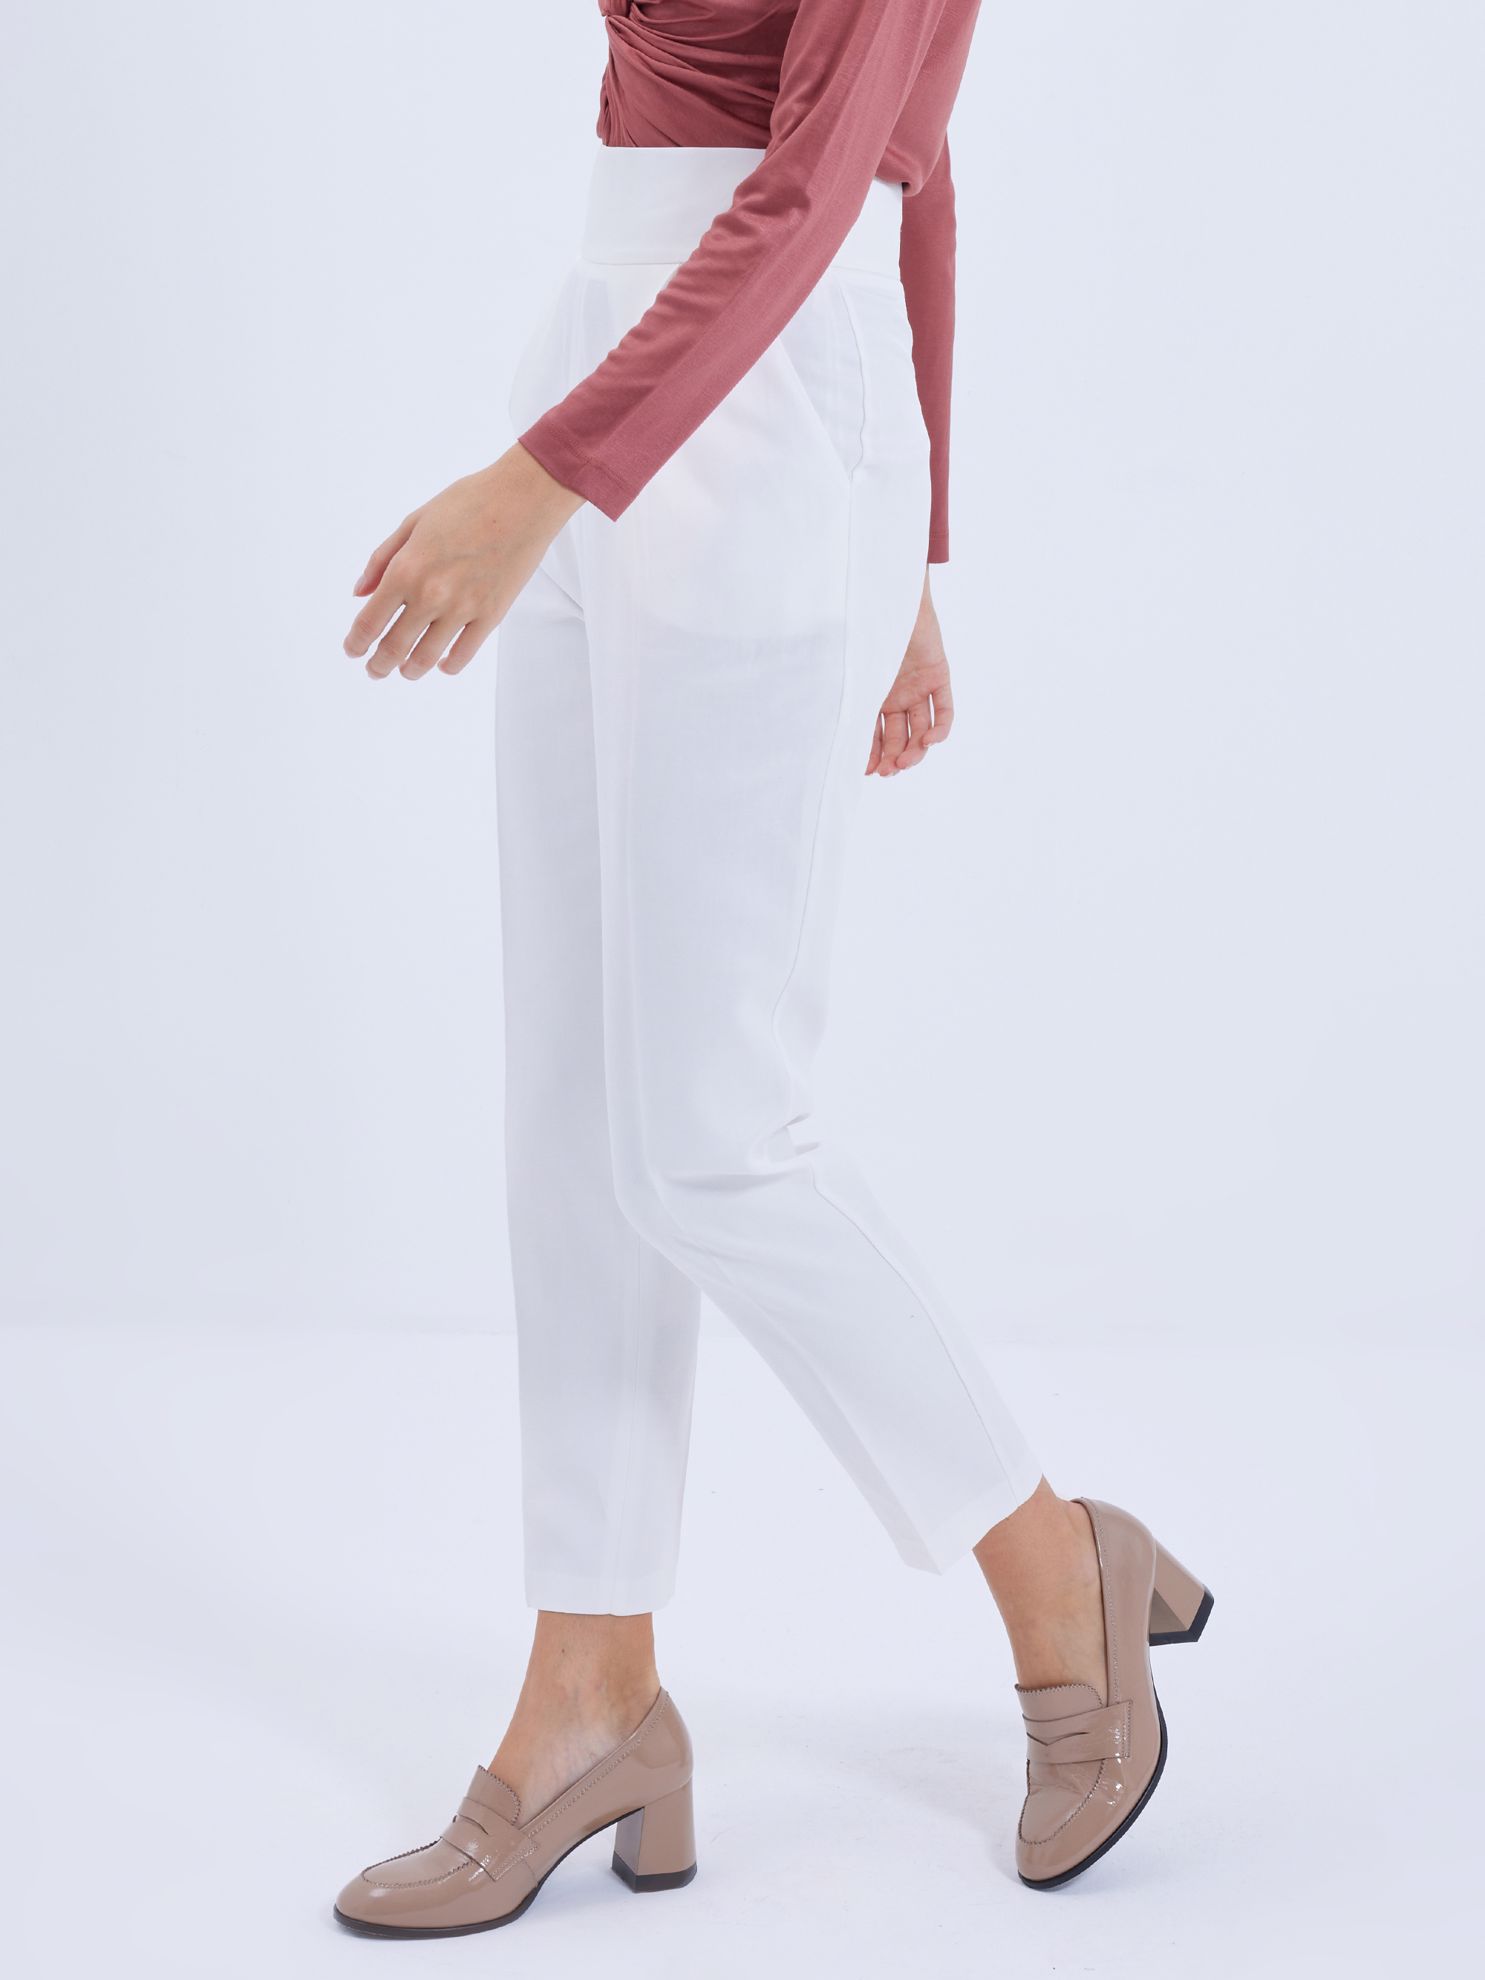 Karaca Kadın Pantolon-Beyaz. ürün görseli